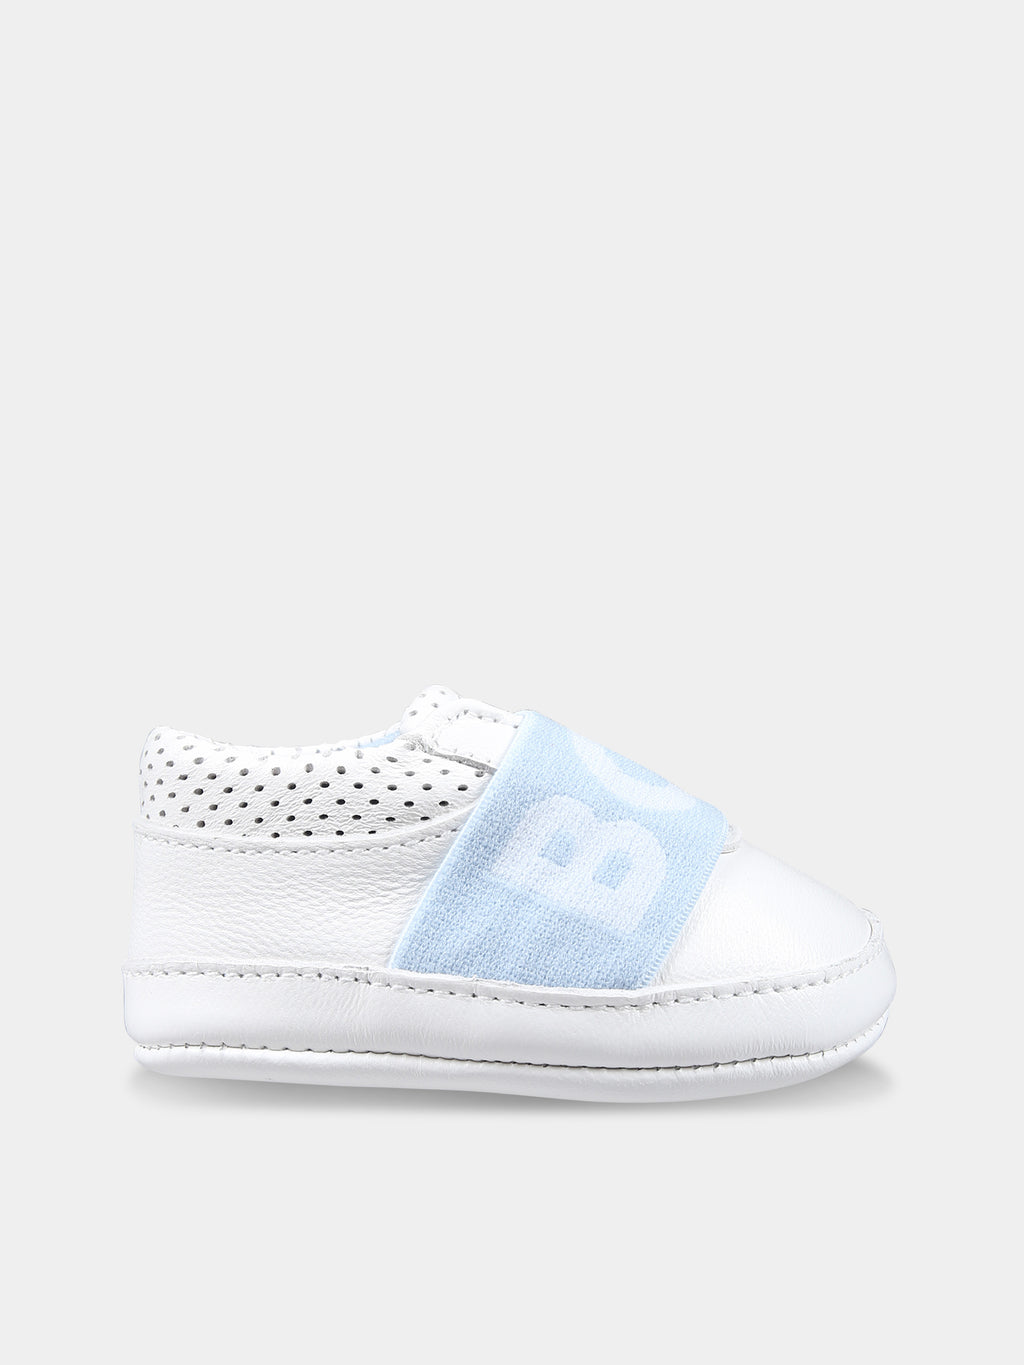 Sneakers bianche per neonato con logo